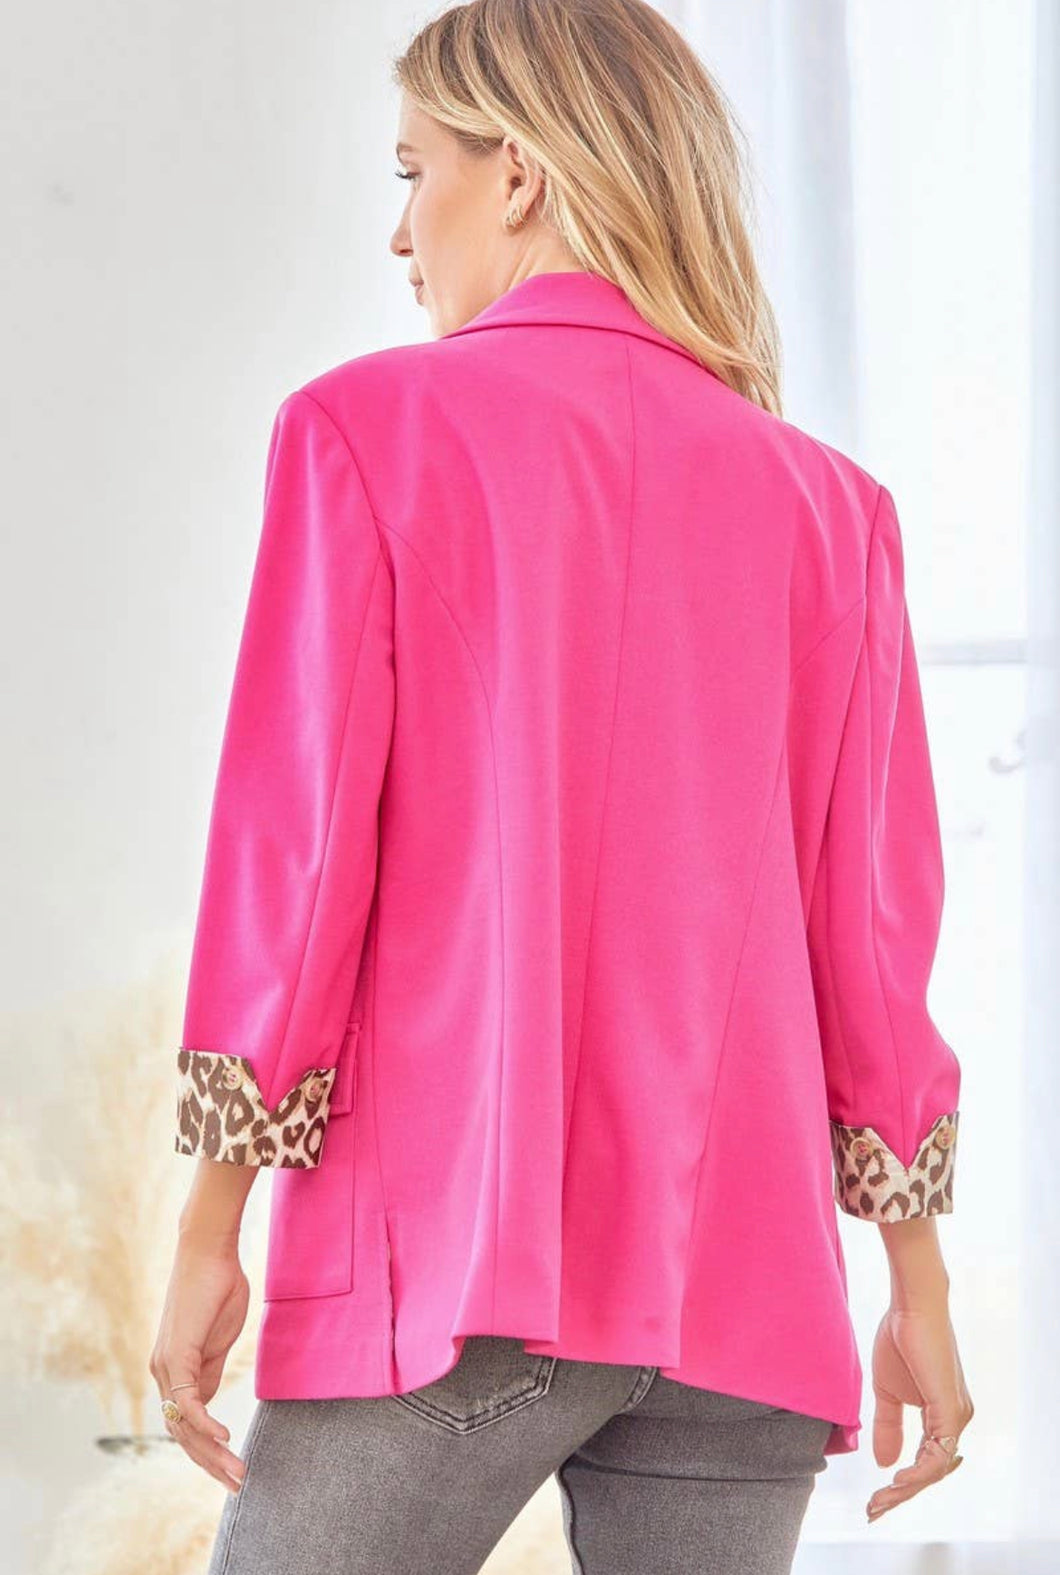 Leopard Sleeve Blazer - Pink